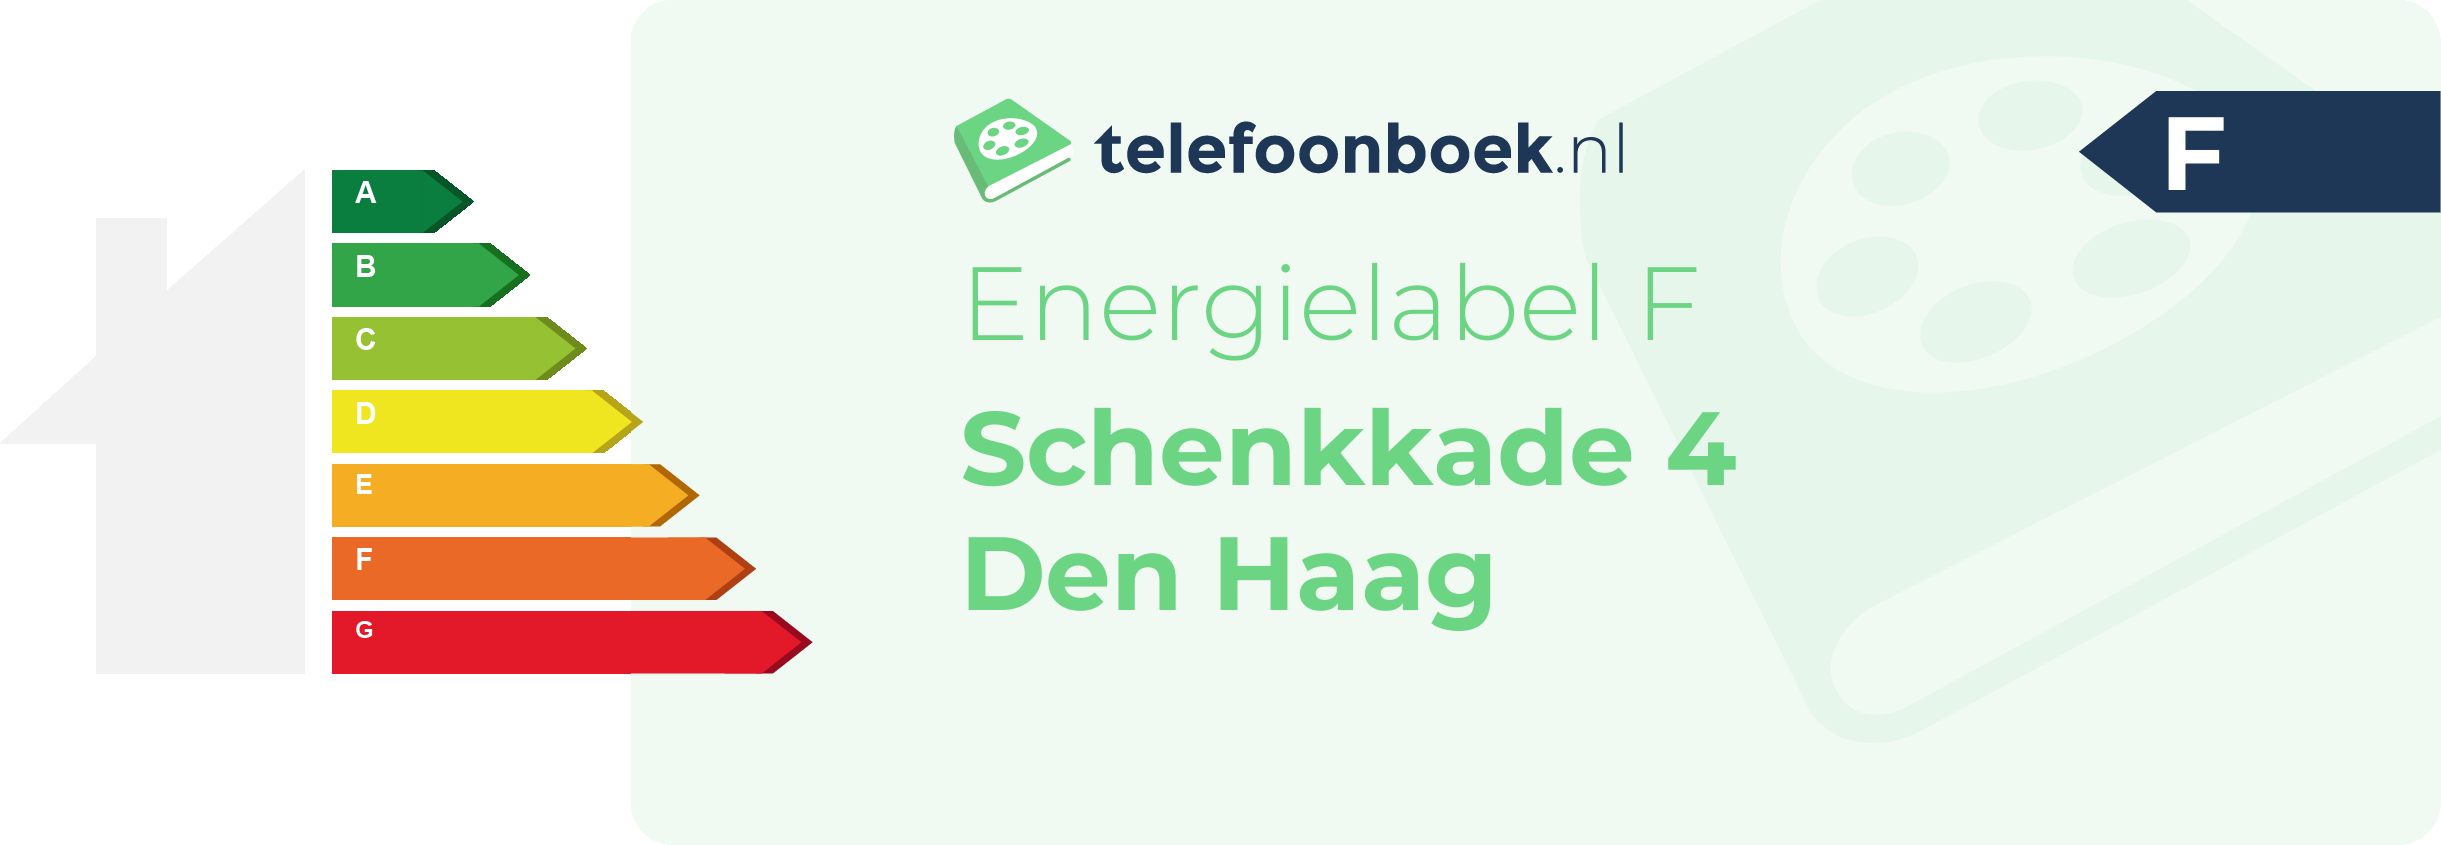 Energielabel Schenkkade 4 Den Haag